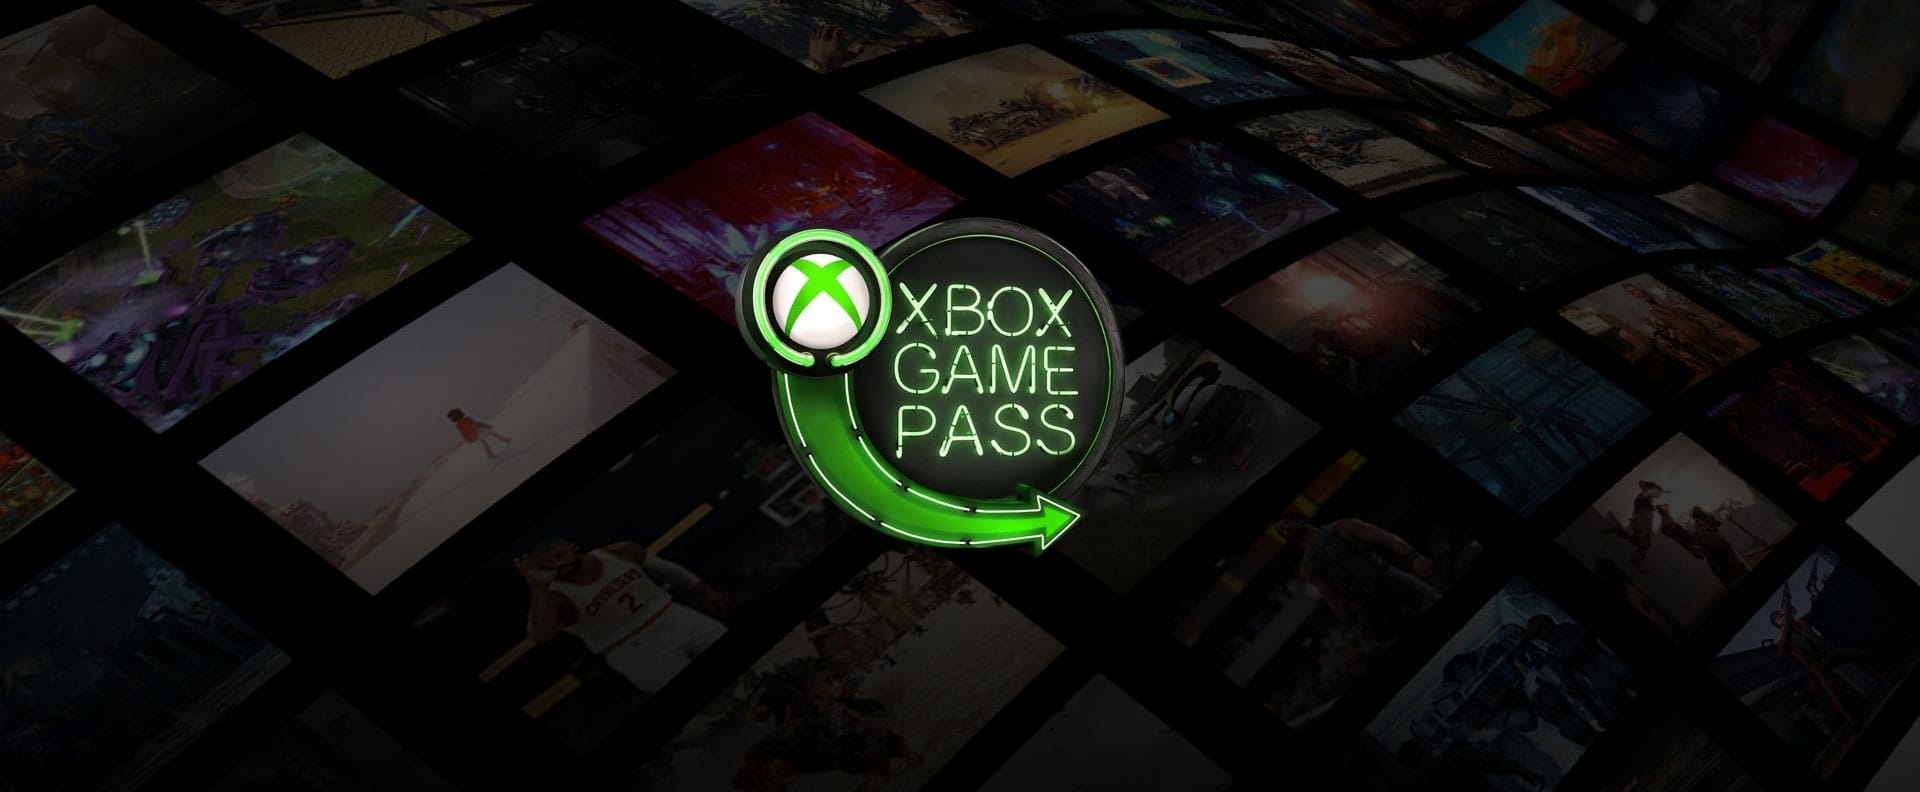 3 ألعاب هتتشال من خدمة Xbox Game Pass